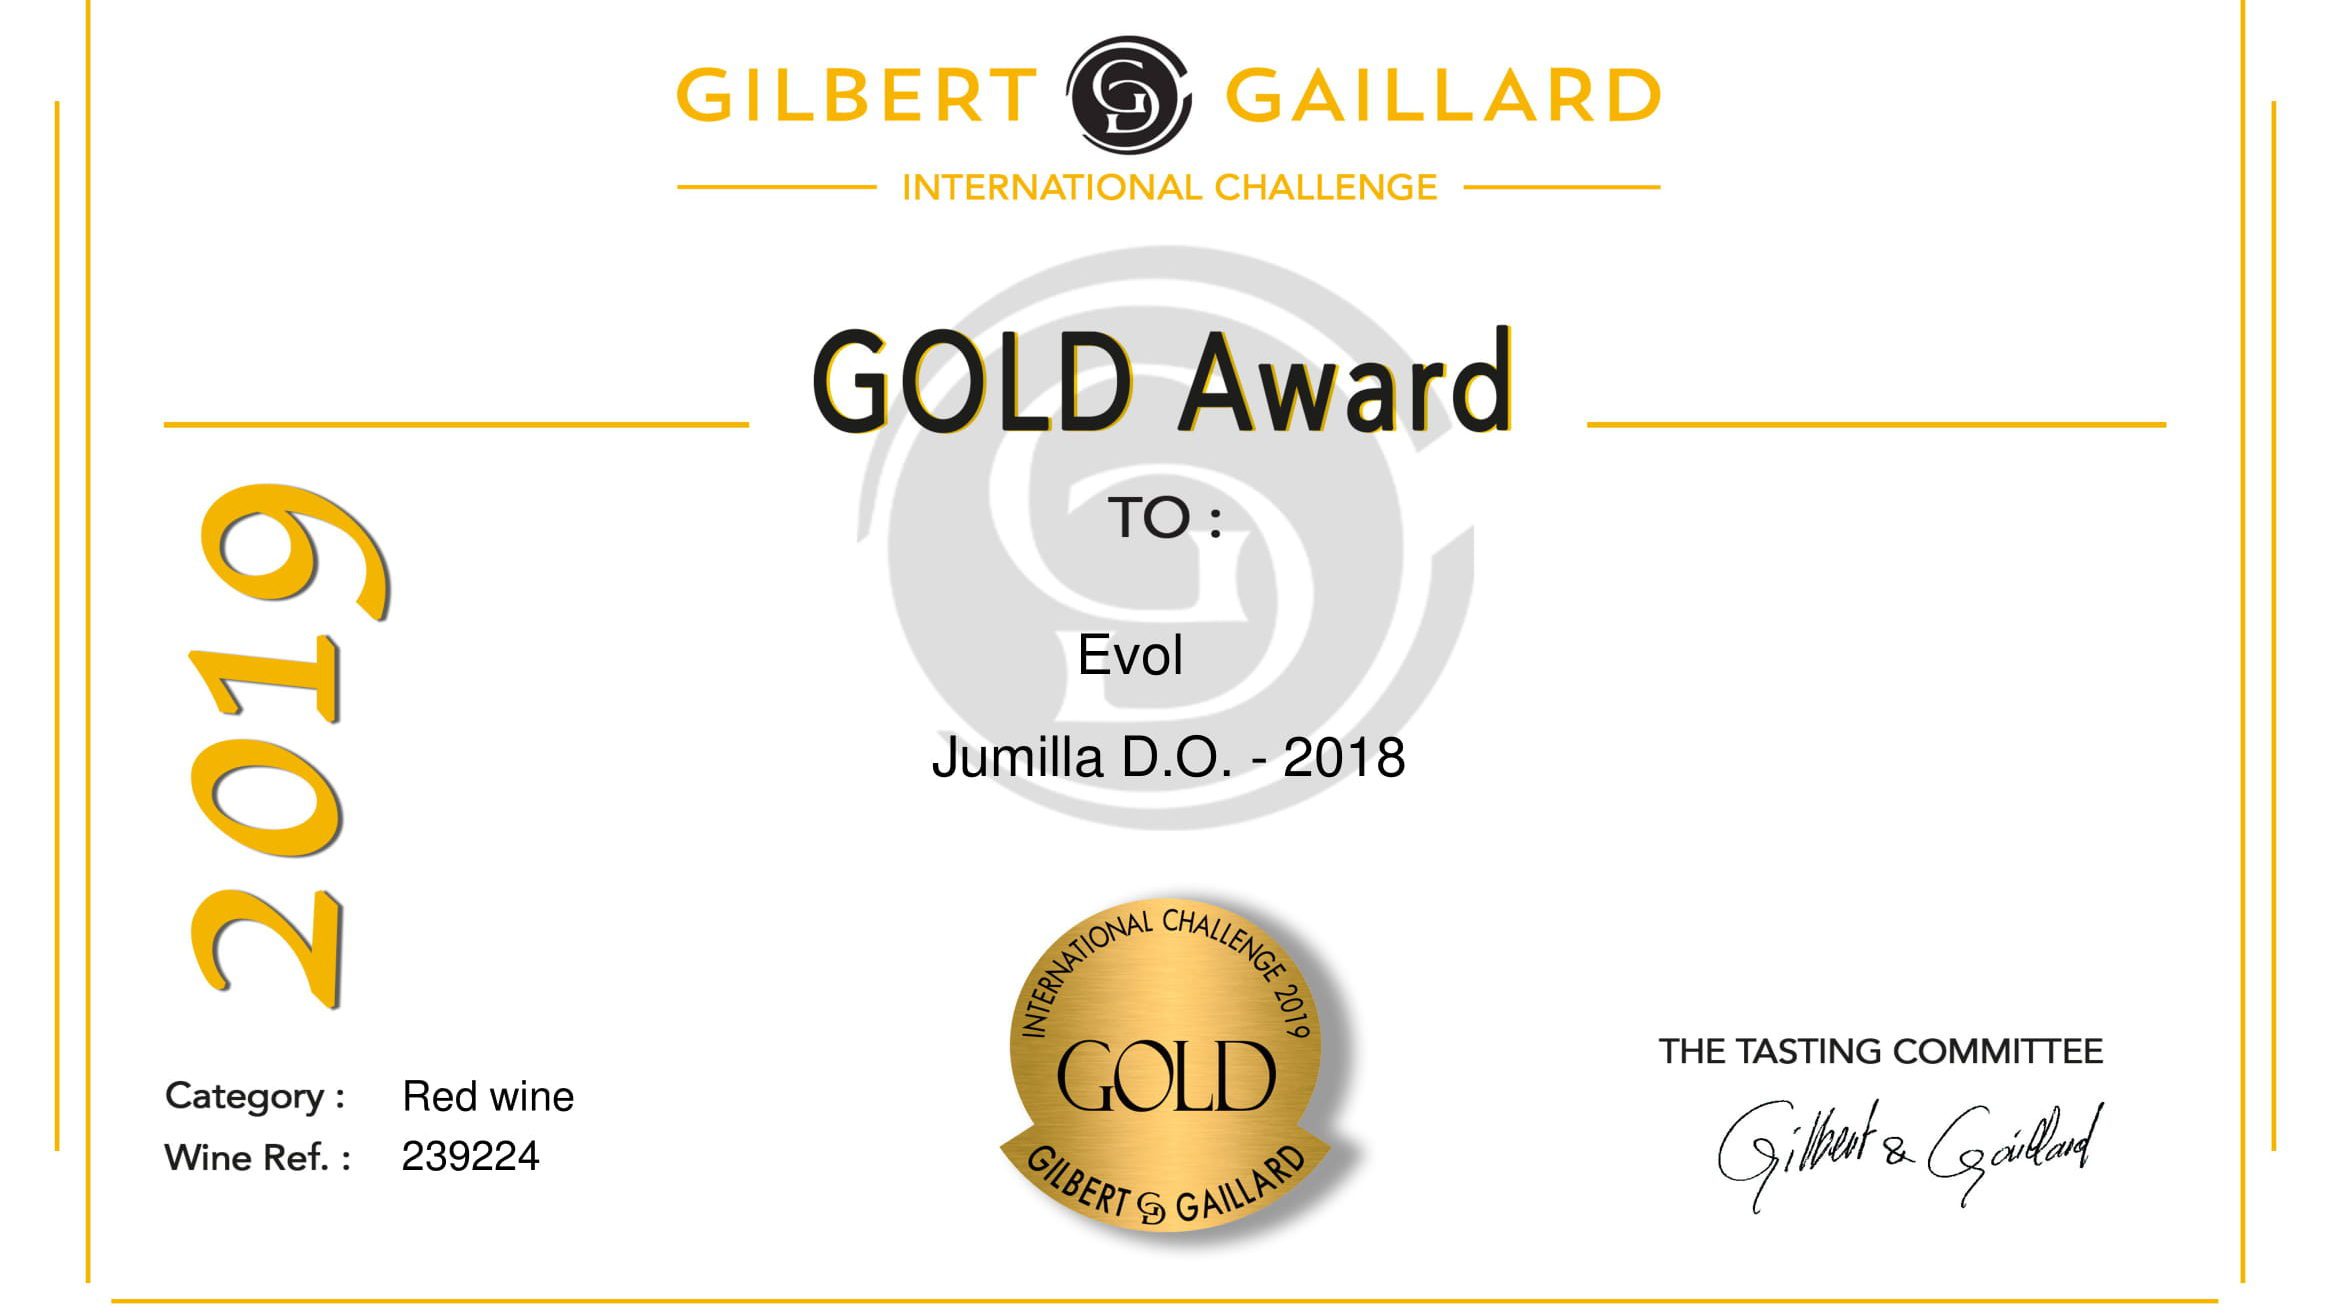 El vino EVOL obtiene una medalla de oro en el Challenge Gilbert & Gaillard